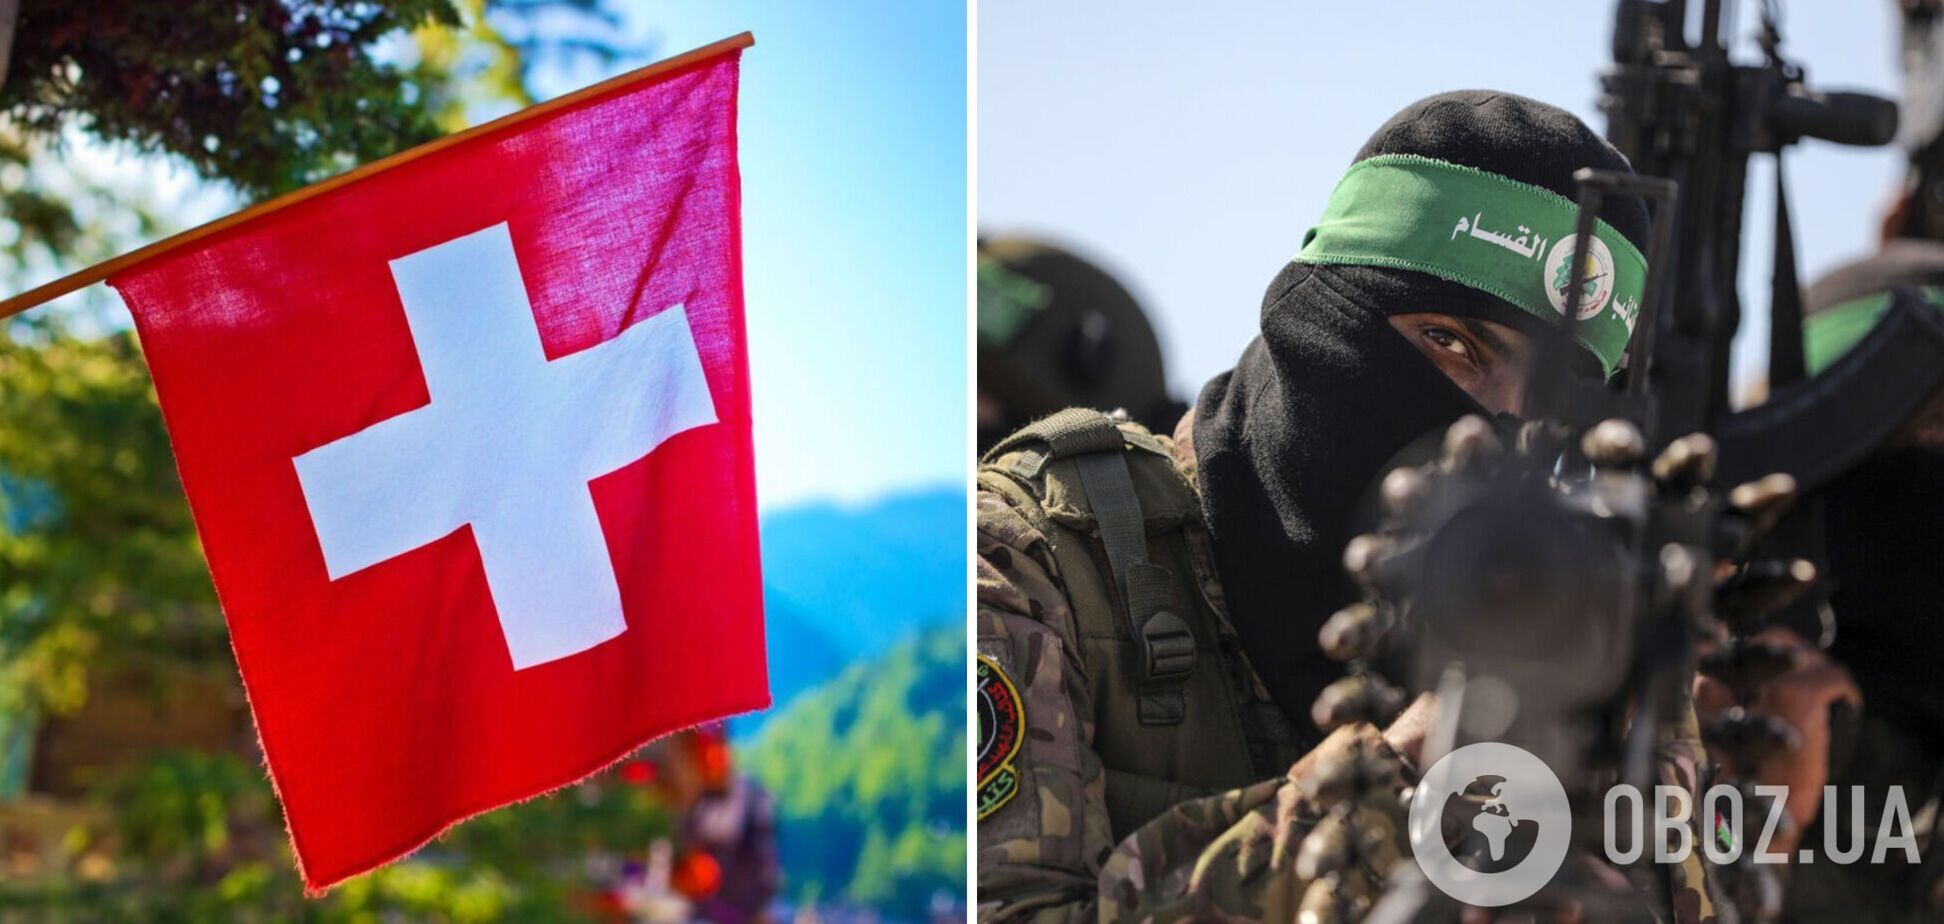 Швейцария расследует финансирование ХАМАС и хочет признать его террористической организацией